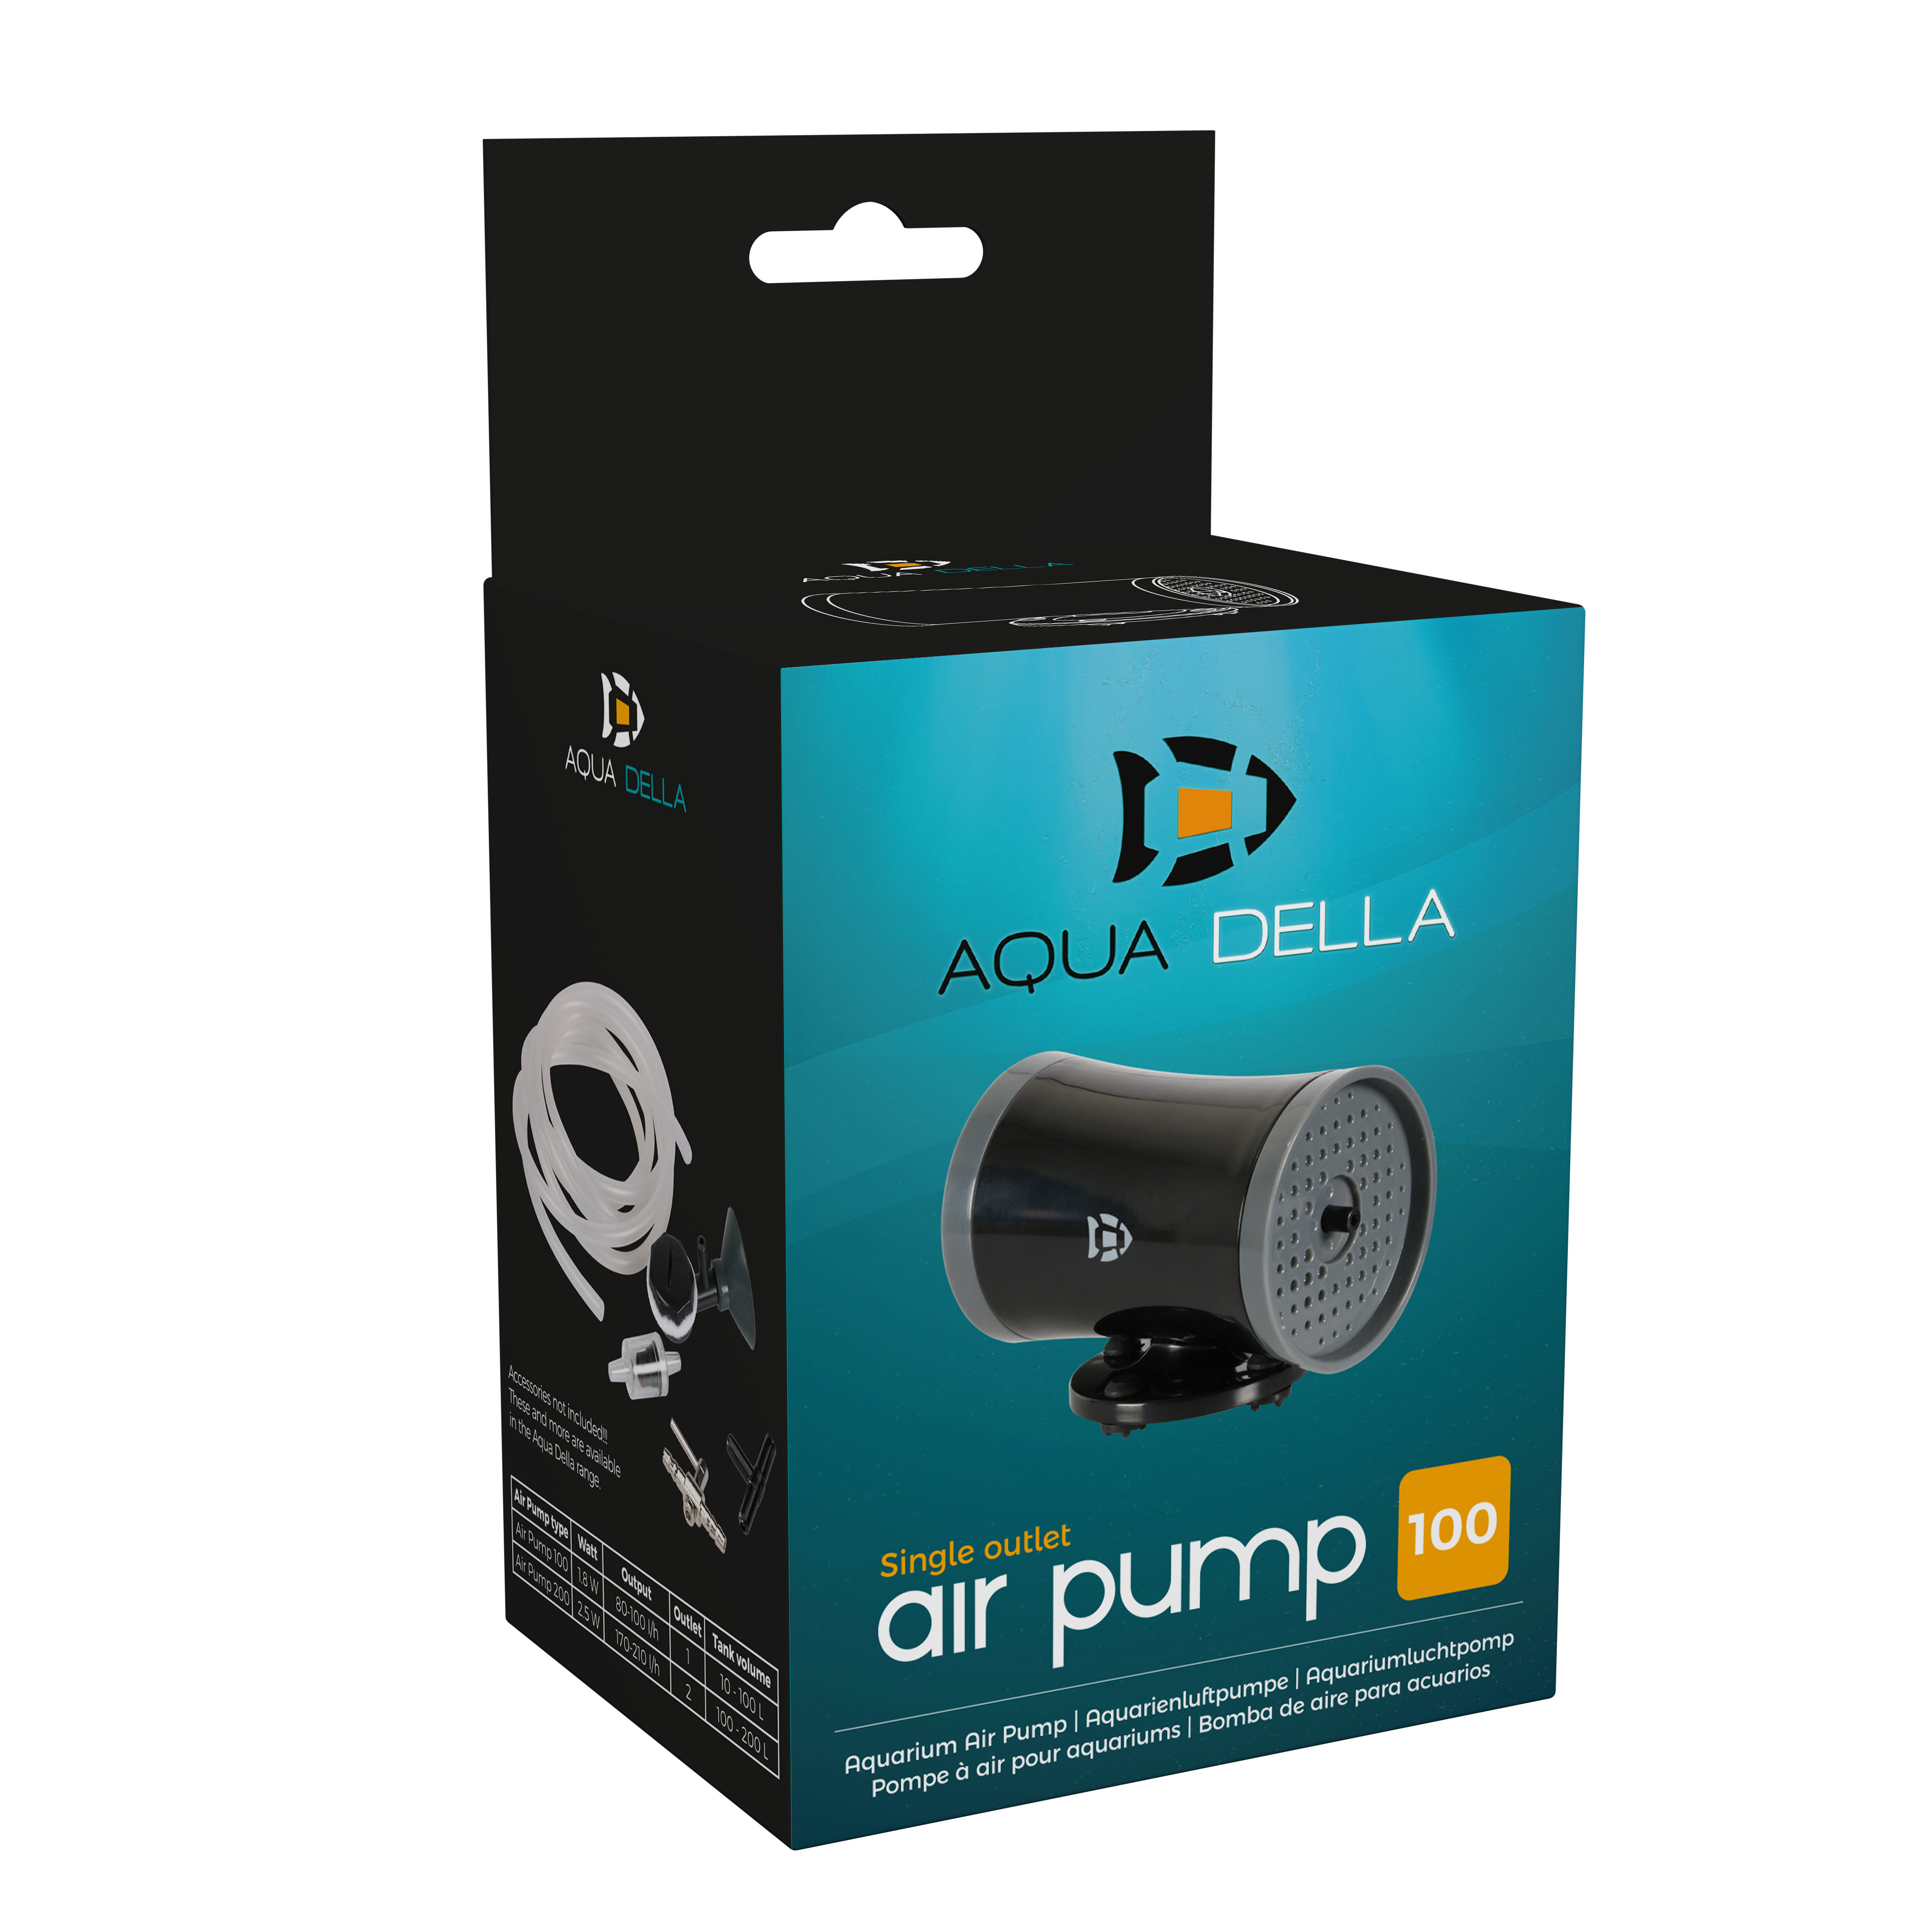 Aqua Della air pump 100